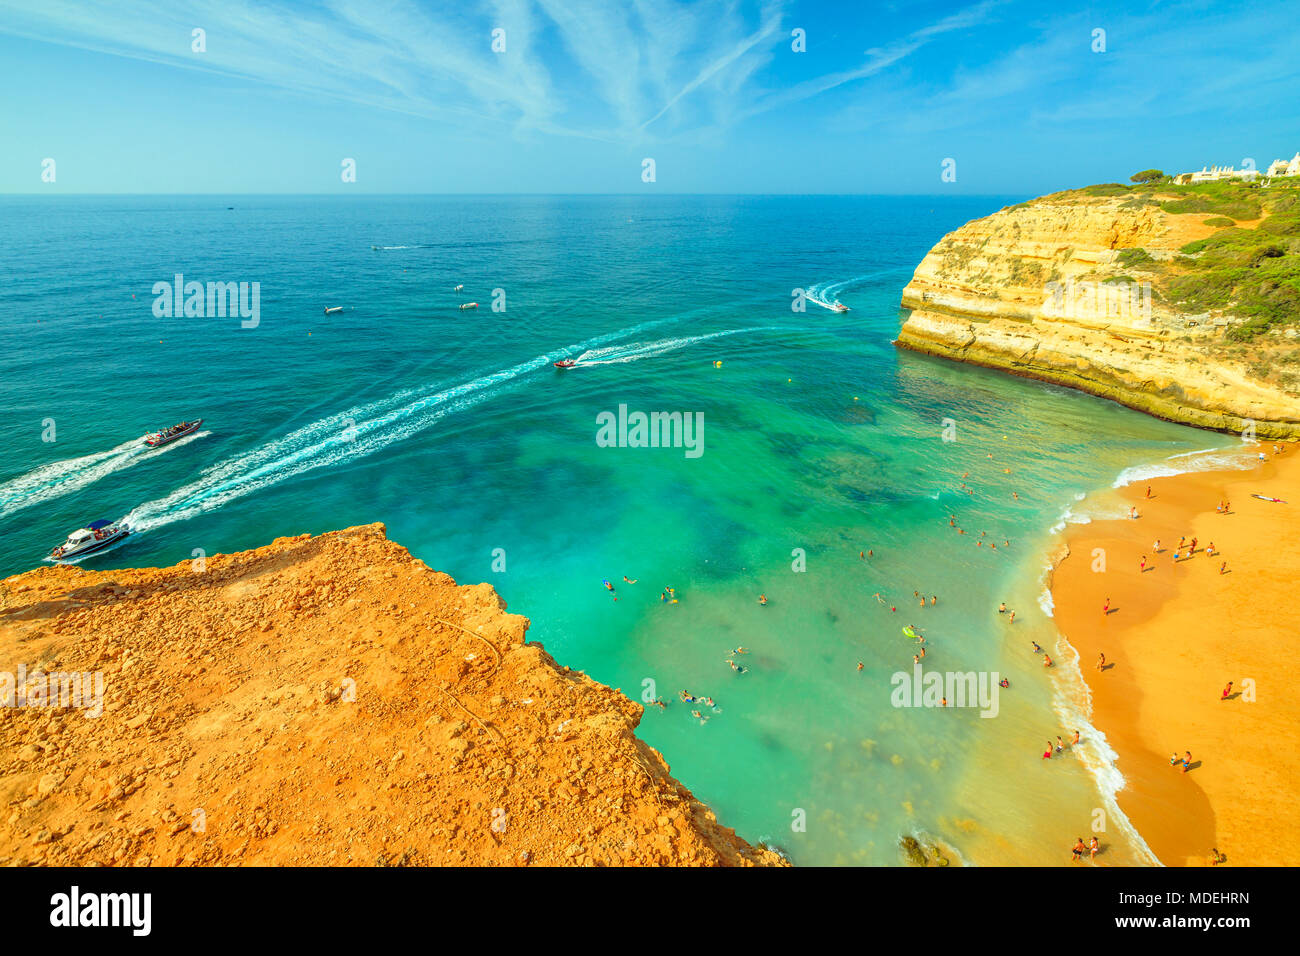 Vue aérienne de falaises d'or de Praia de Benagil en Algarve près de Lagoa, Portugal, Europe. Des excursions en bateau pour visiter le célèbre site Algar de Benagil, la grotte près de la plage de Benagil. Tourisme dans l'Algarve. Banque D'Images